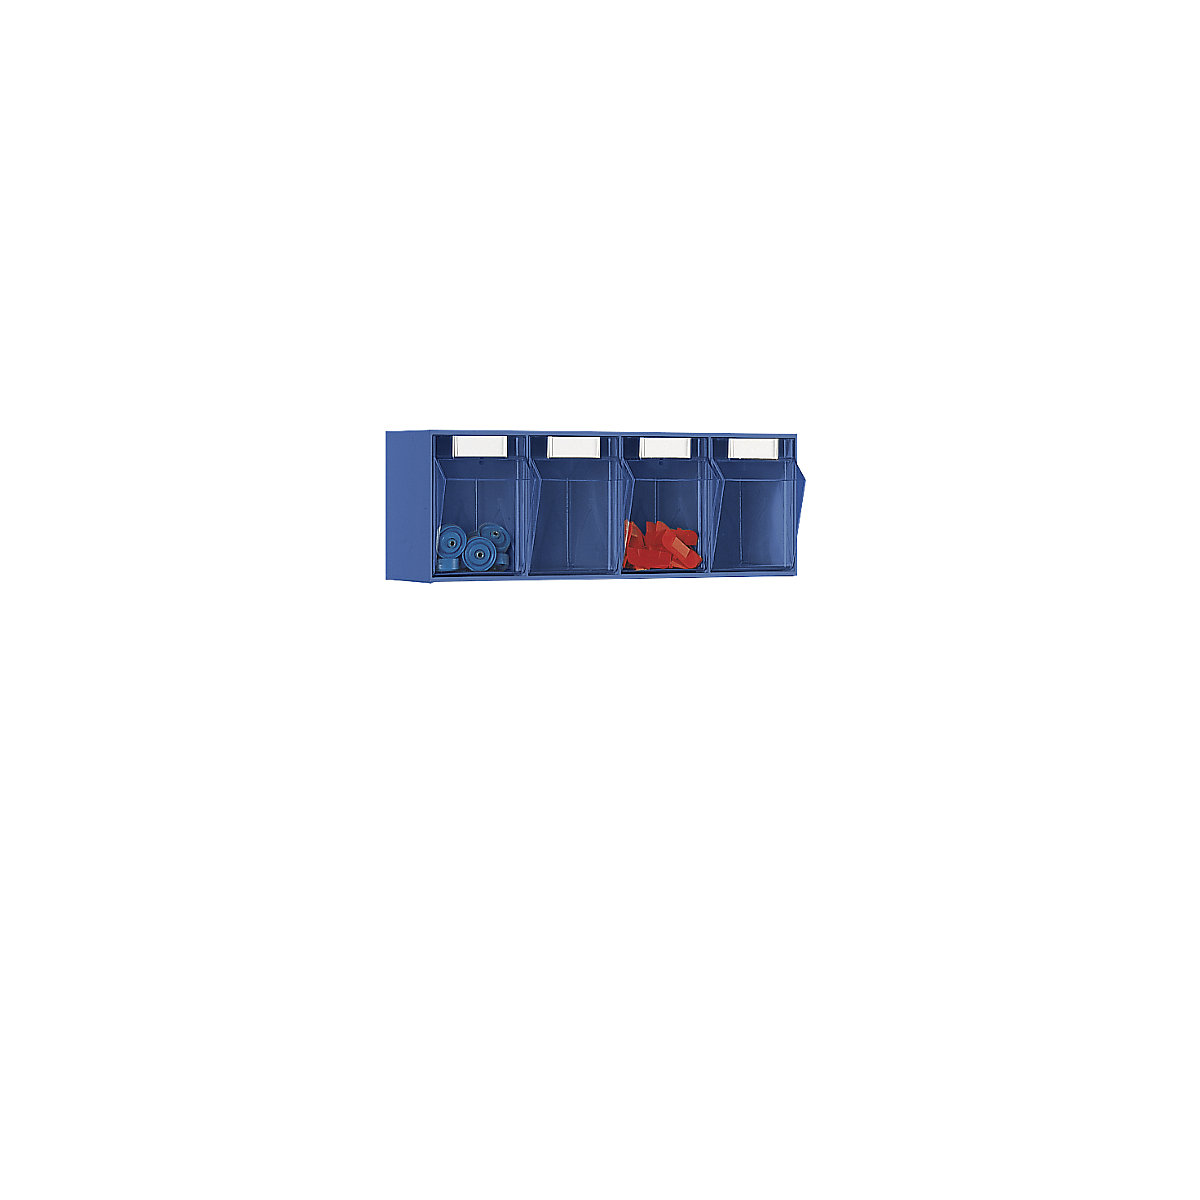 Sistema de caixas articuladas, AxLxP do corpo 207 x 600 x 168 mm, 4 caixas, azul-1